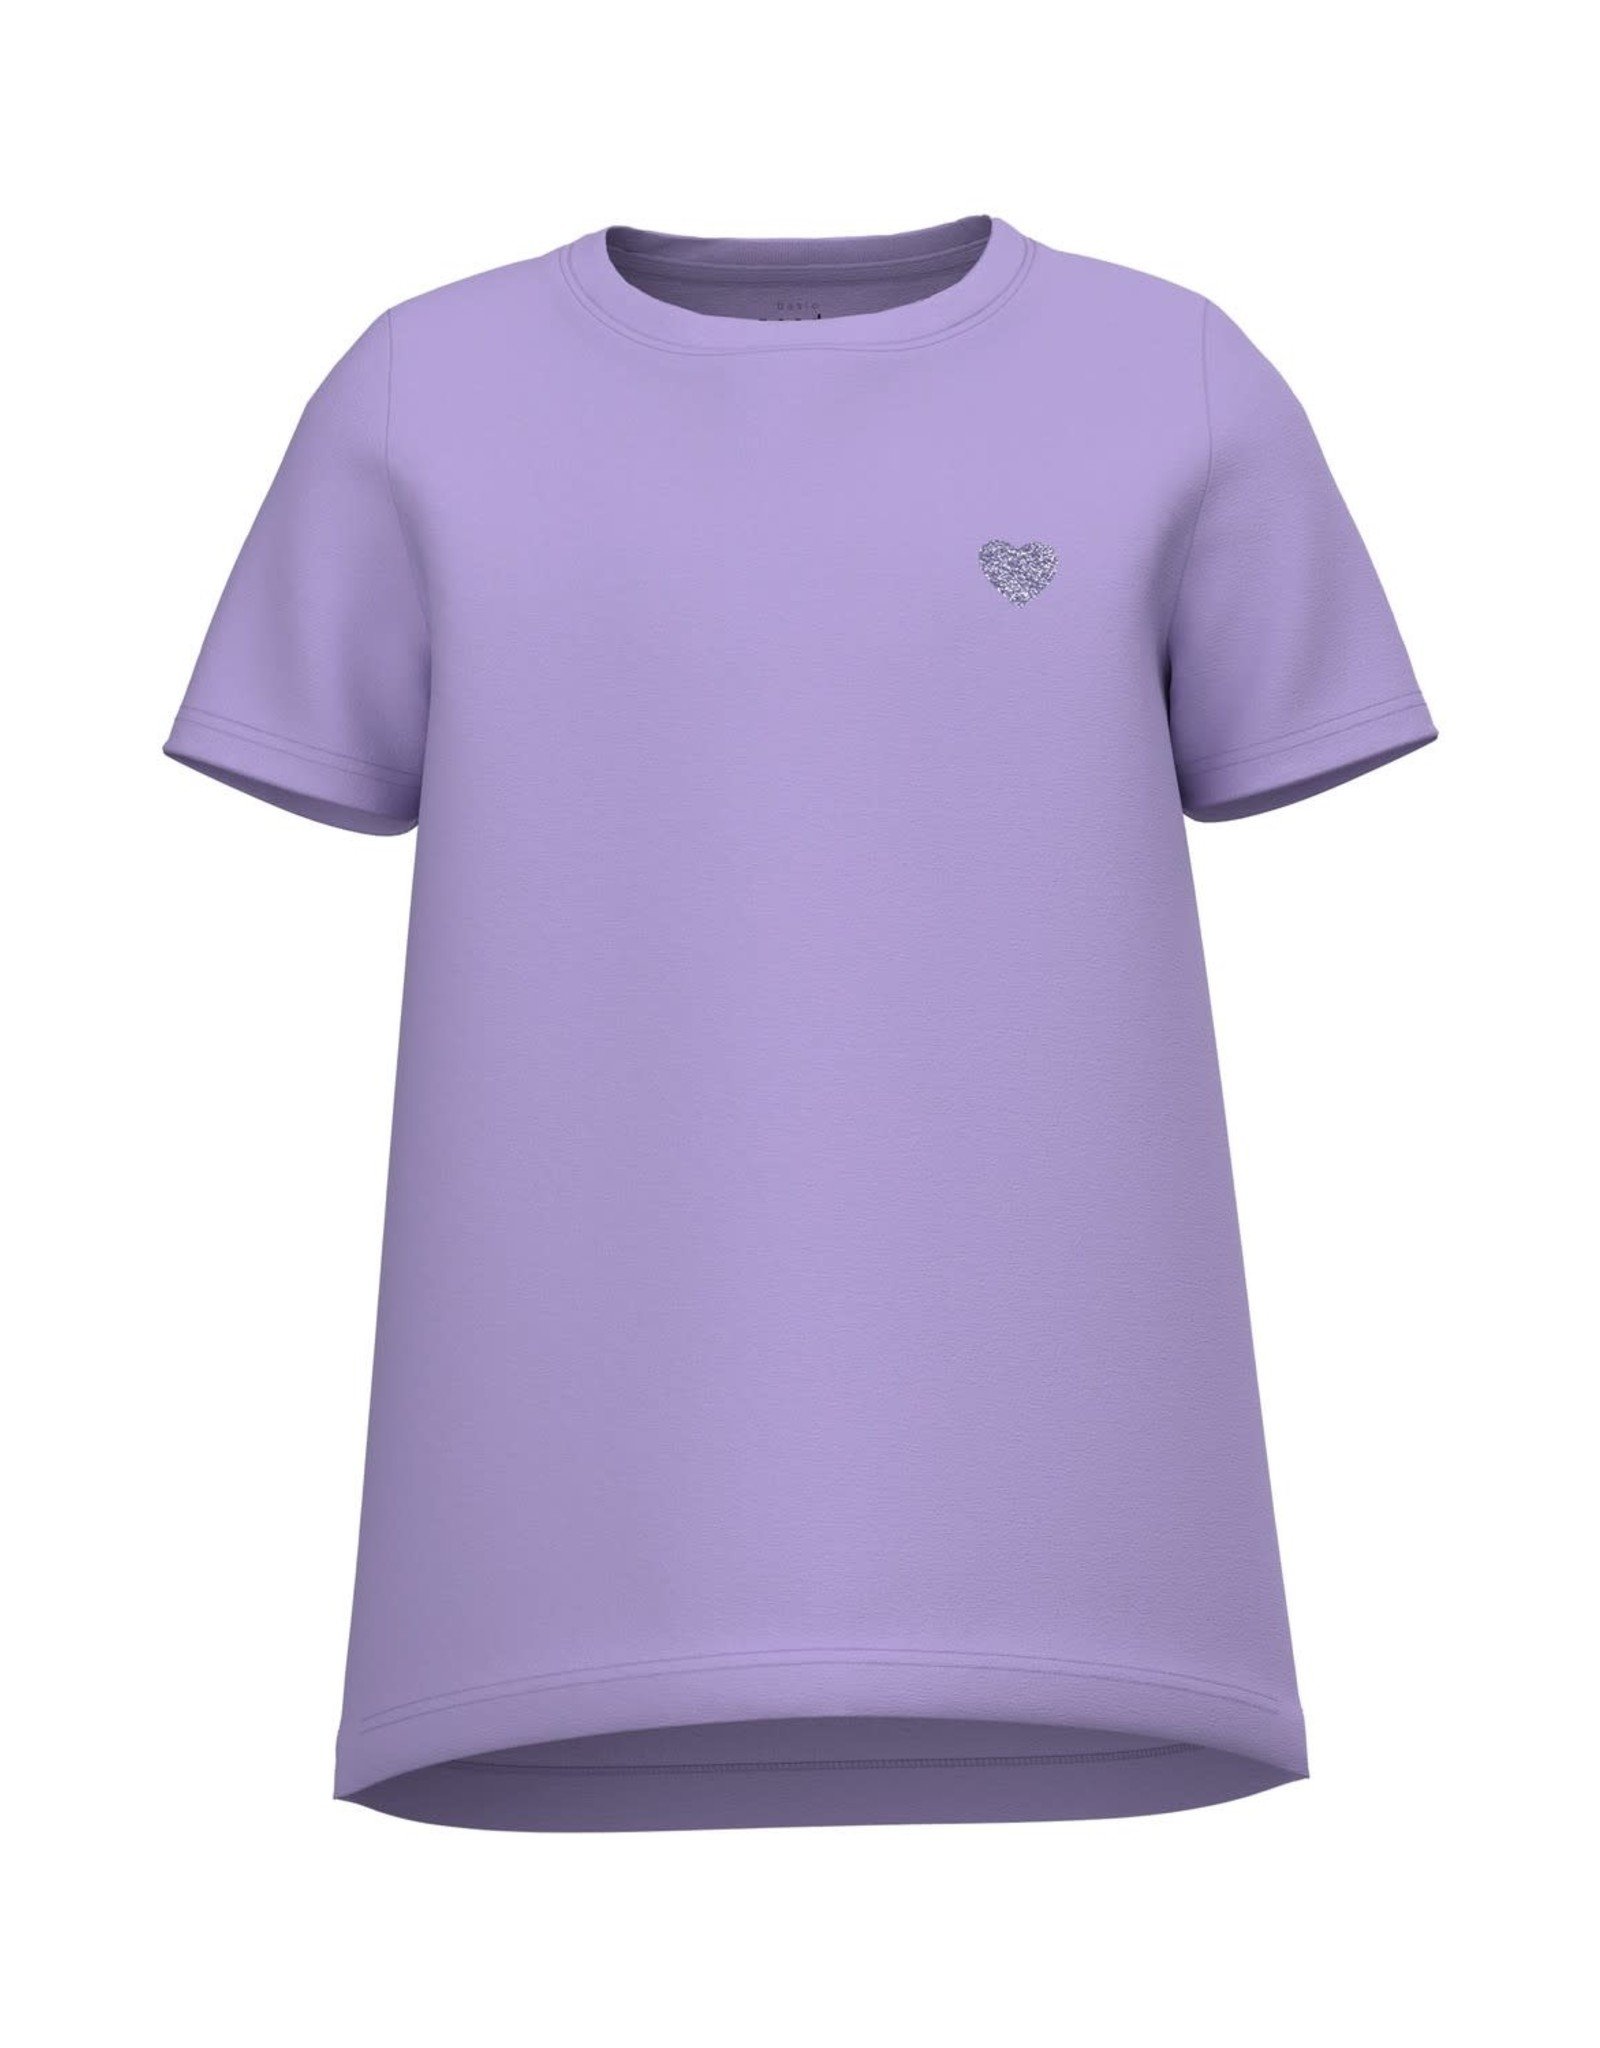 Mijnwerker Afgeschaft samenvoegen Basis paarse t-shirt van Name It | hejsan.be - Hejsan Hoppsan